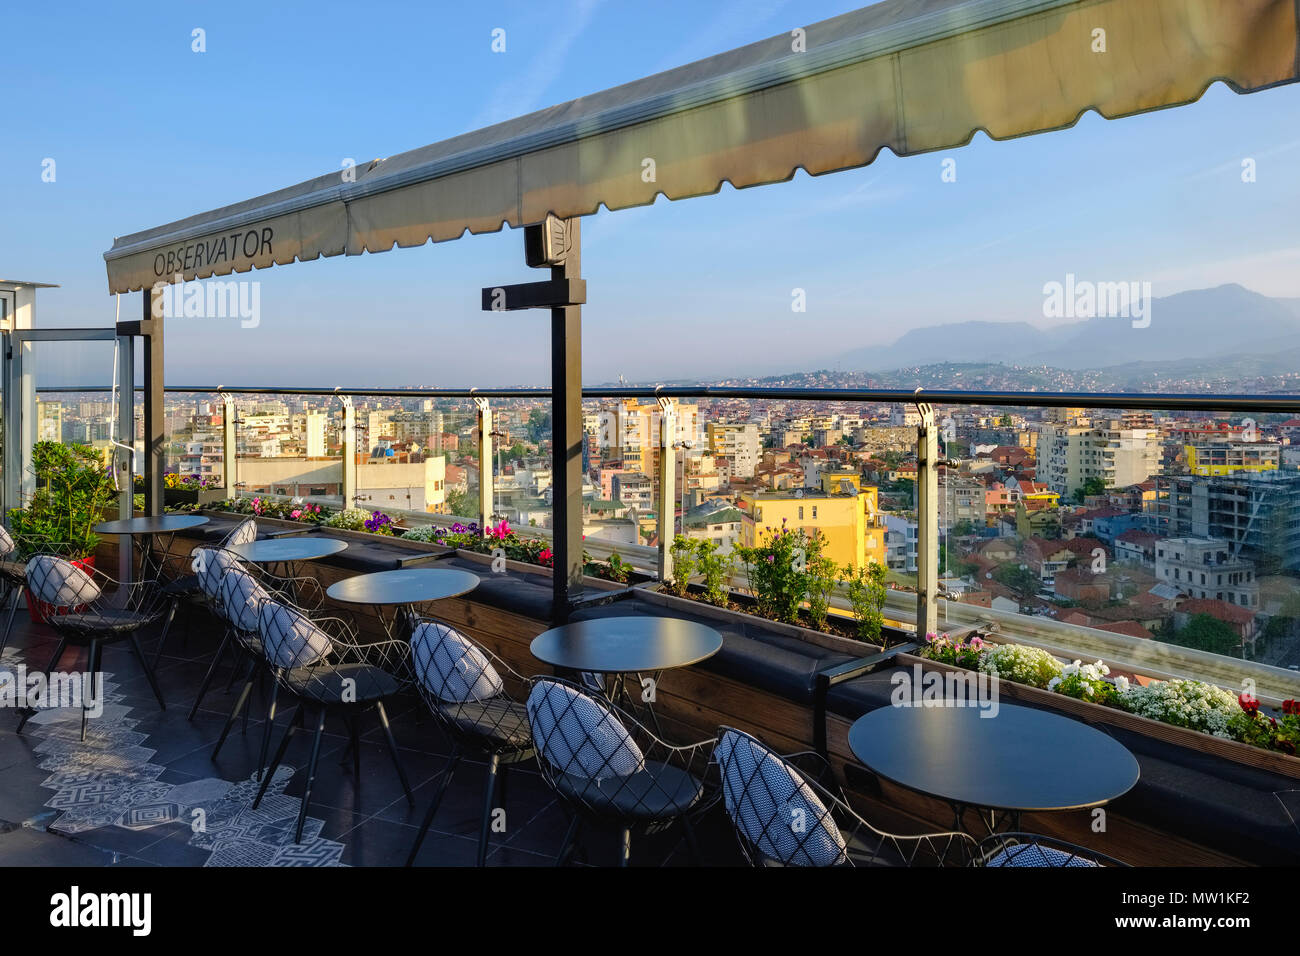 La terrazza sul tetto del Piano Bar Osservatore / Compilatore, vista del centro della città, Tirana, Albania Foto Stock